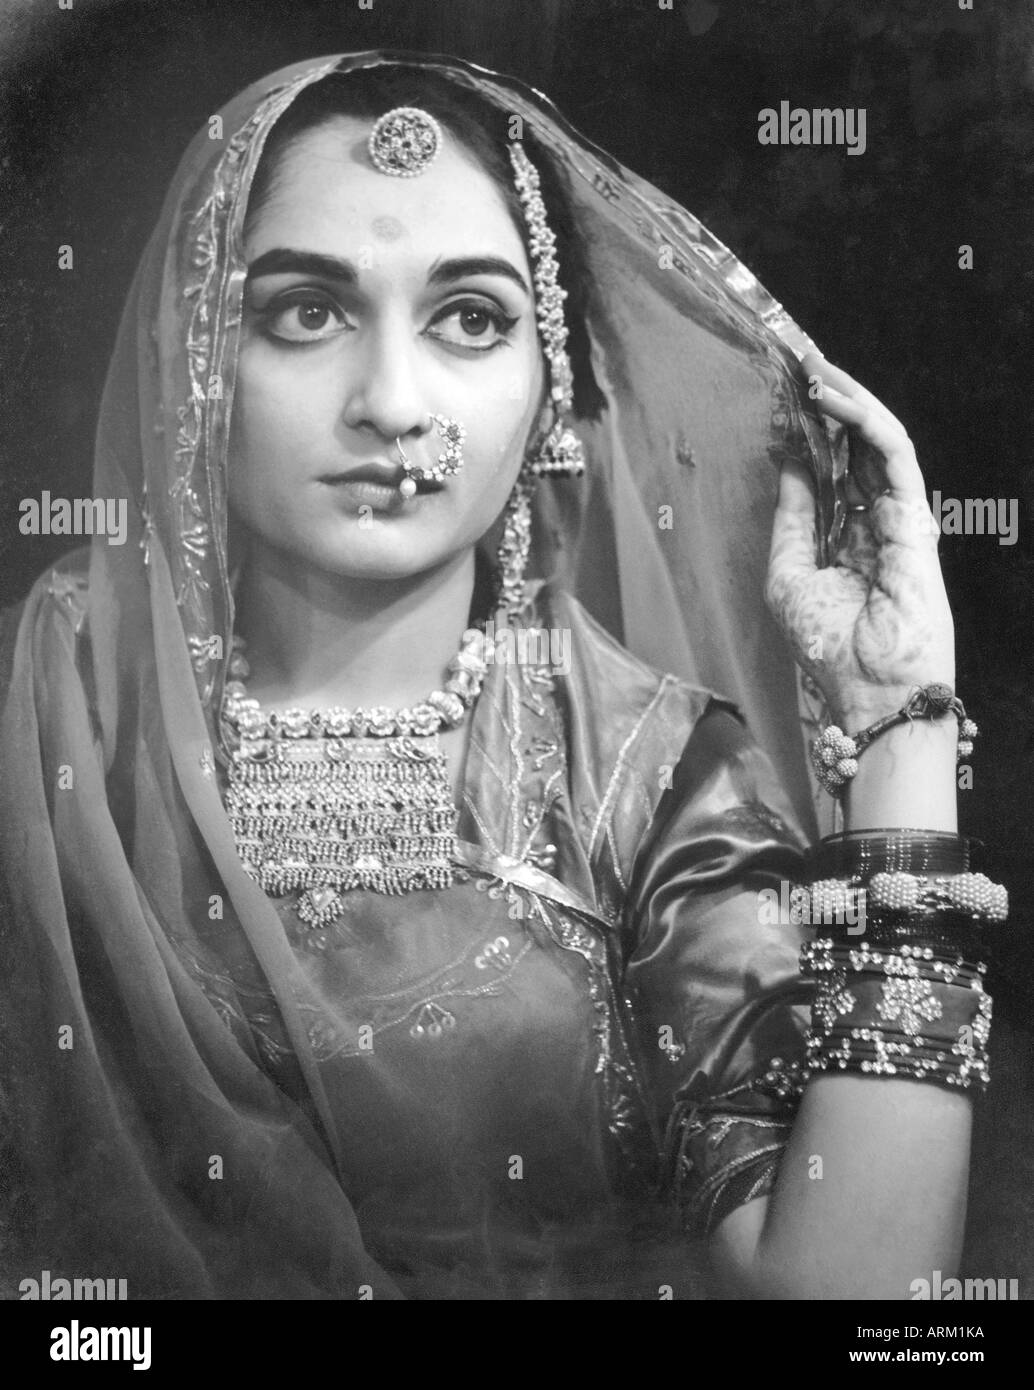 Alter Jahrgang 1940s Porträt der indischen Braut trägt Hochzeitskleid Und Schmuck Rajasthan Indien Asien 1940s Stockfoto